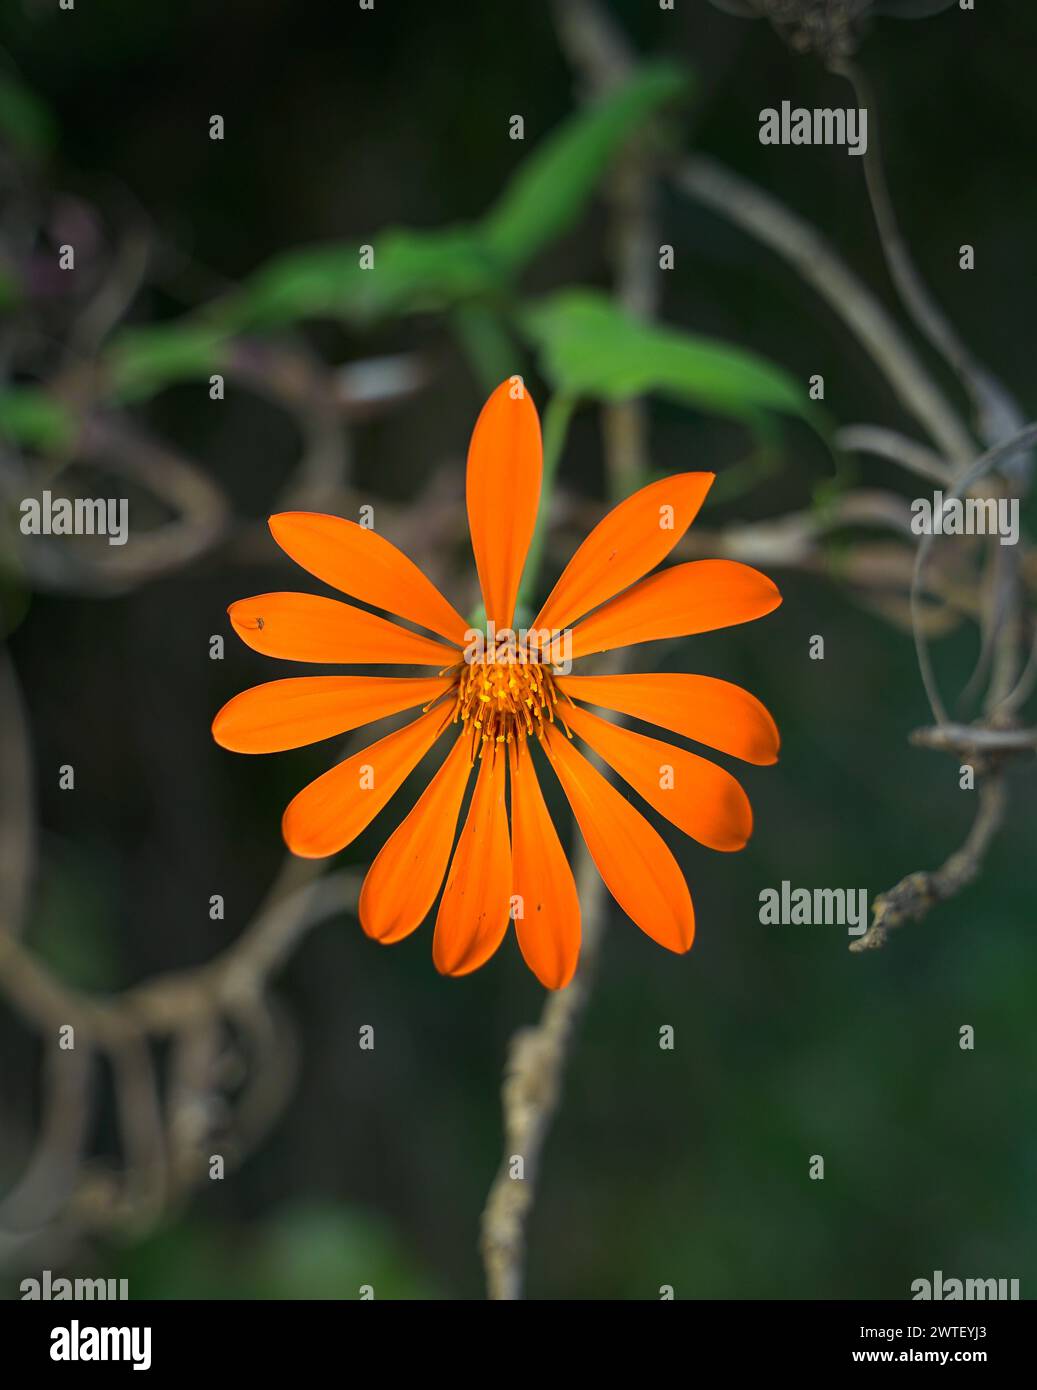 Flor naranja en el bosque Stock Photo